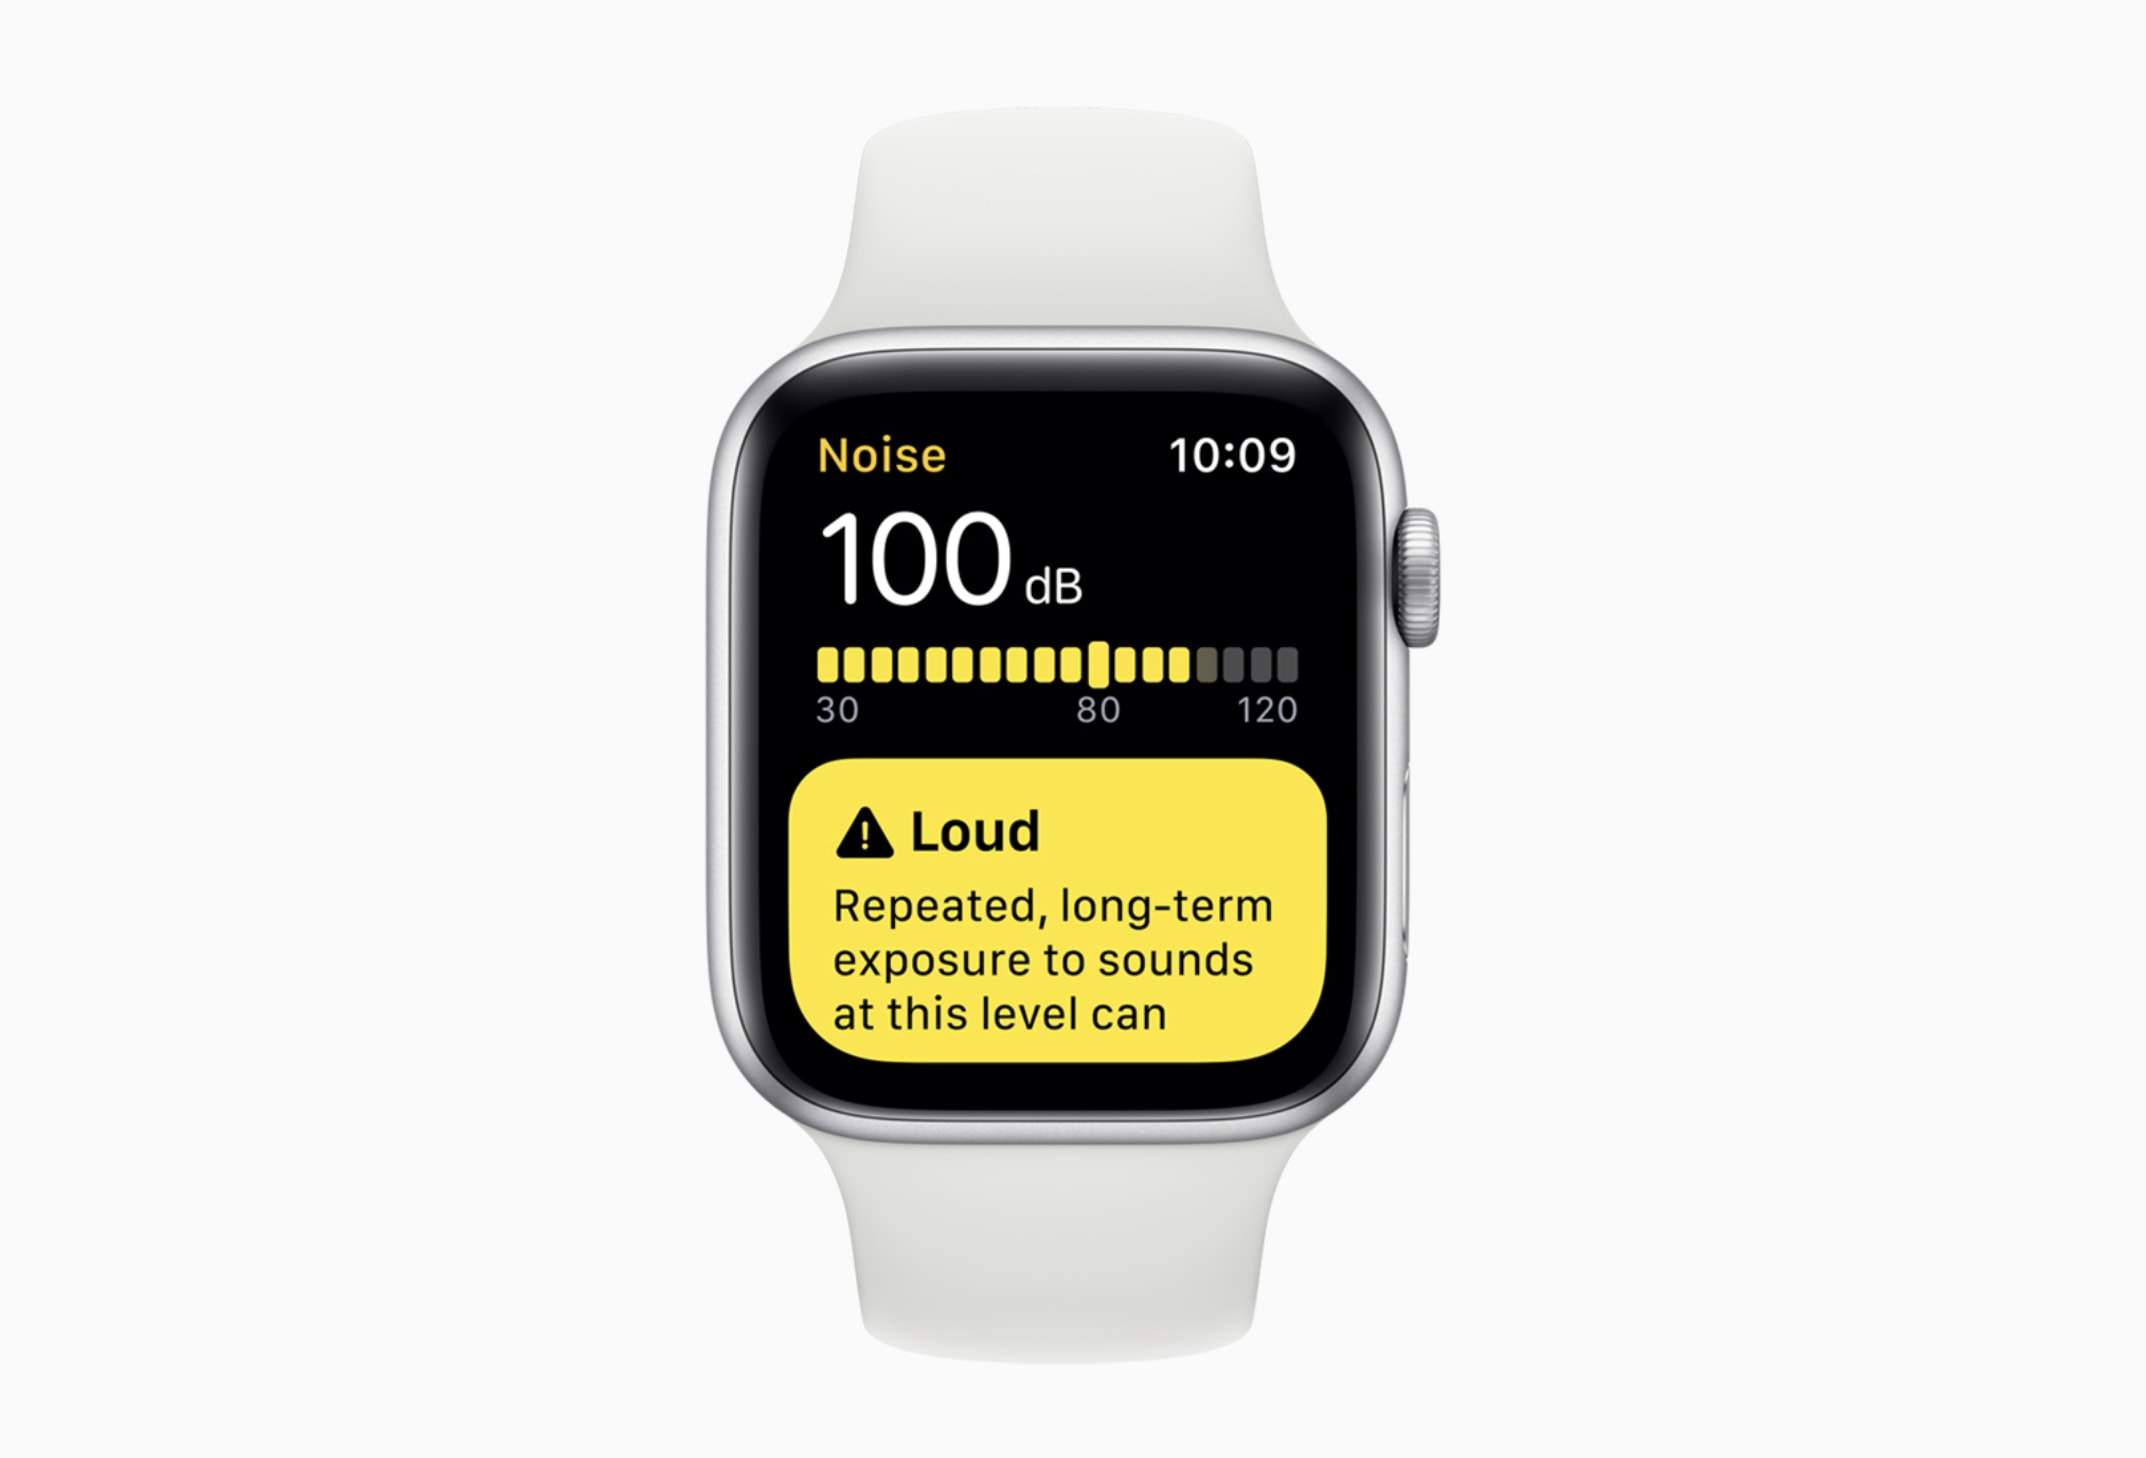 Apple Watch Noise app